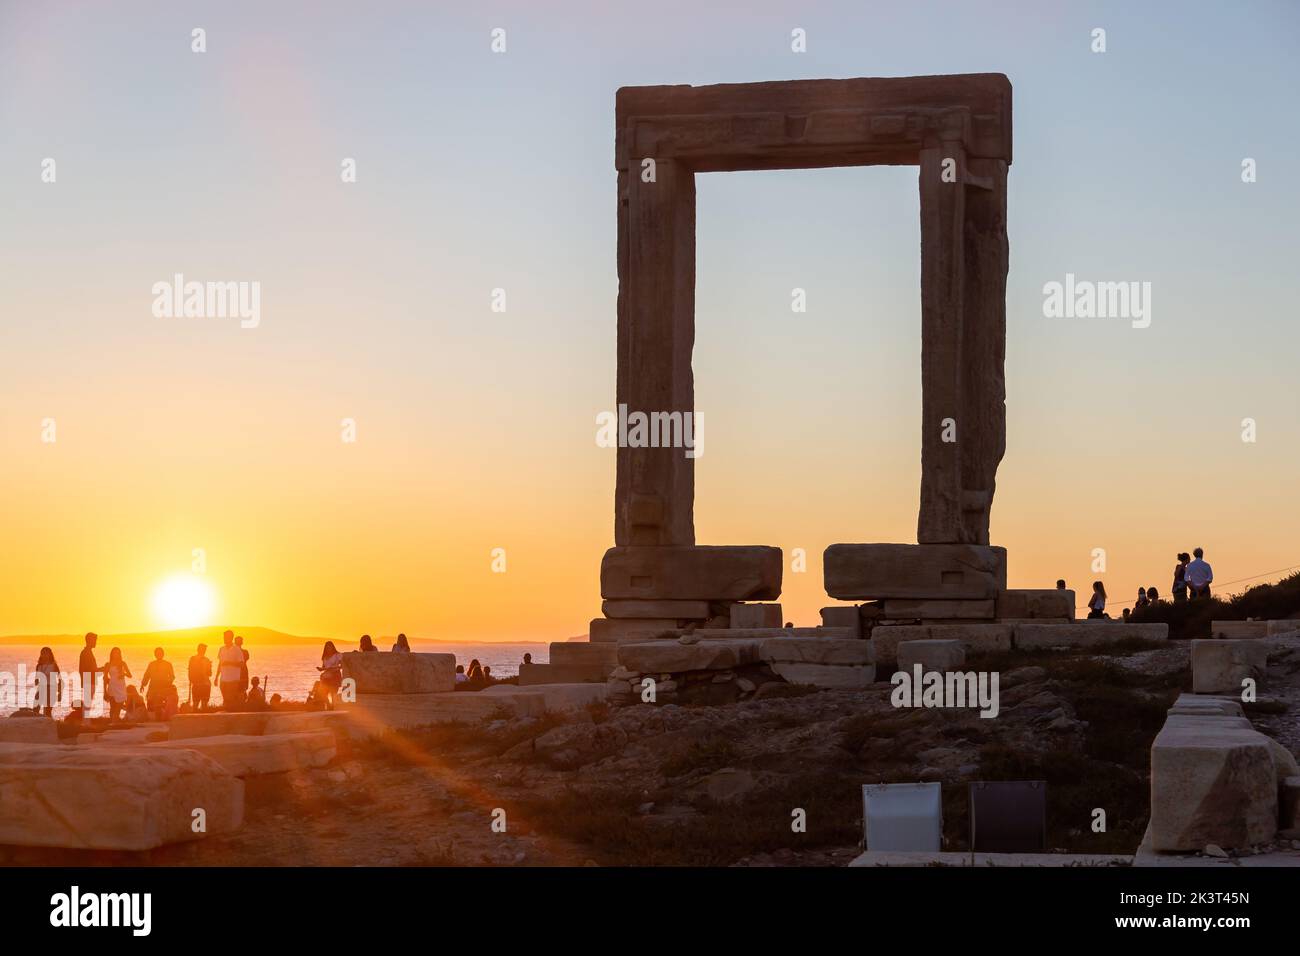 Île de Naxos, coucher de soleil sur Temple d'Apollon, Cyclades Grèce. Les gens admire le coucher de soleil de l'îlot de Palatia. Les rayons du soleil peignent l'arrière-plan du ciel. Banque D'Images